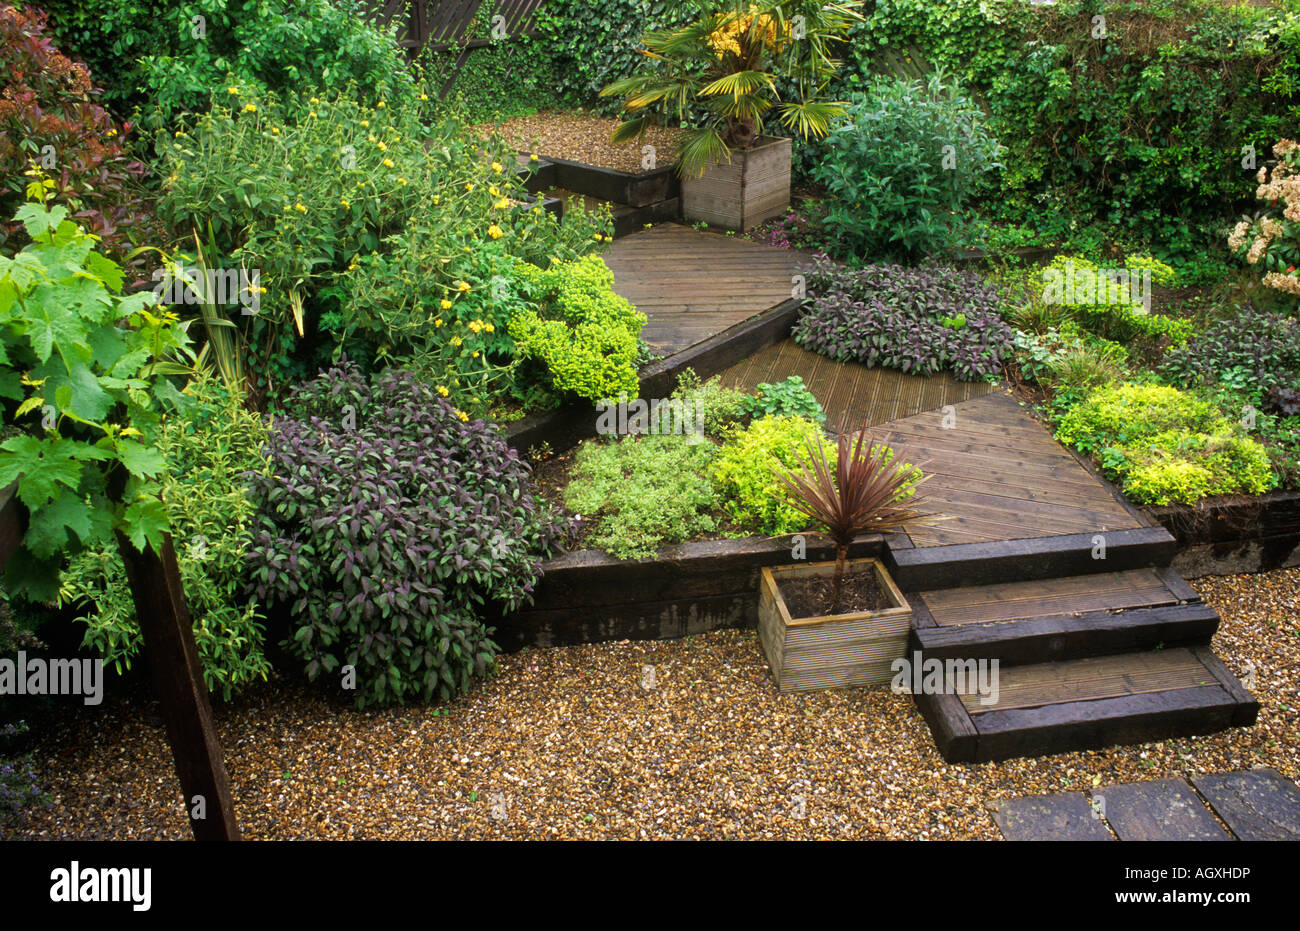 Terrassenförmig angelegten Garten Decking Schritte Ebenen Kies Design Container Pflanzen kleine Bäume Stockfoto